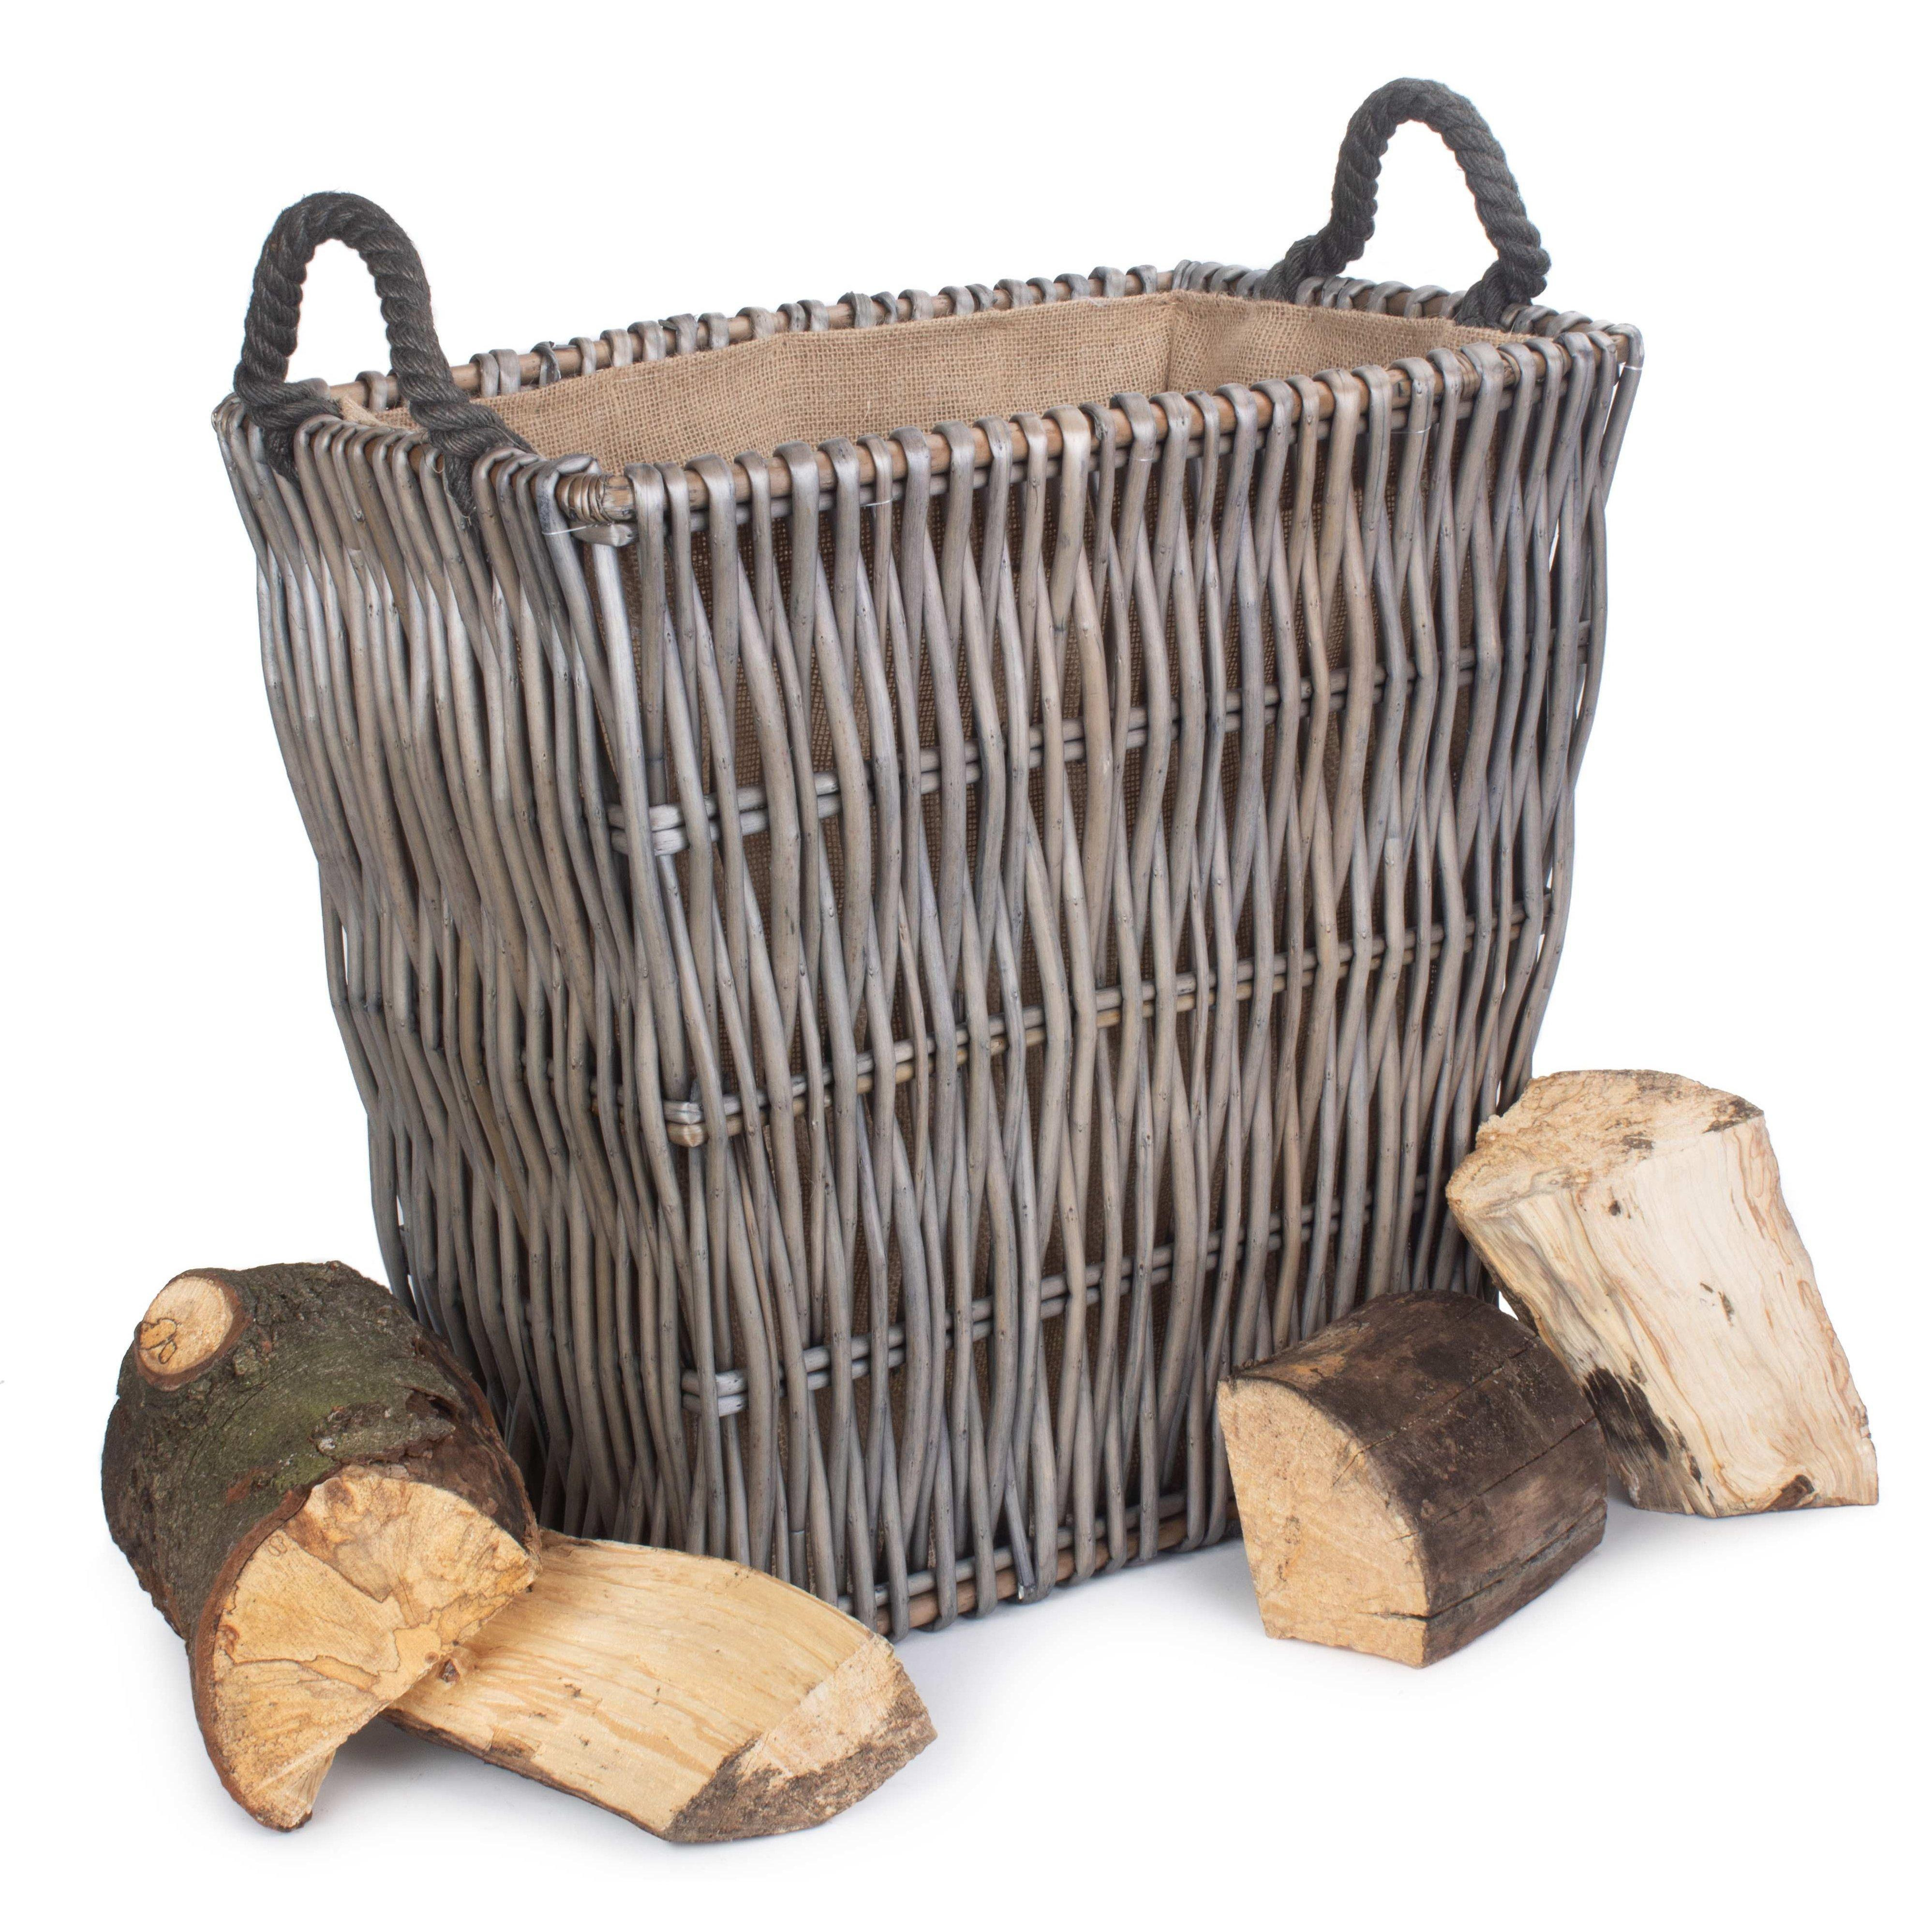 Wicker Grey Rectangular Log Basket - image 1